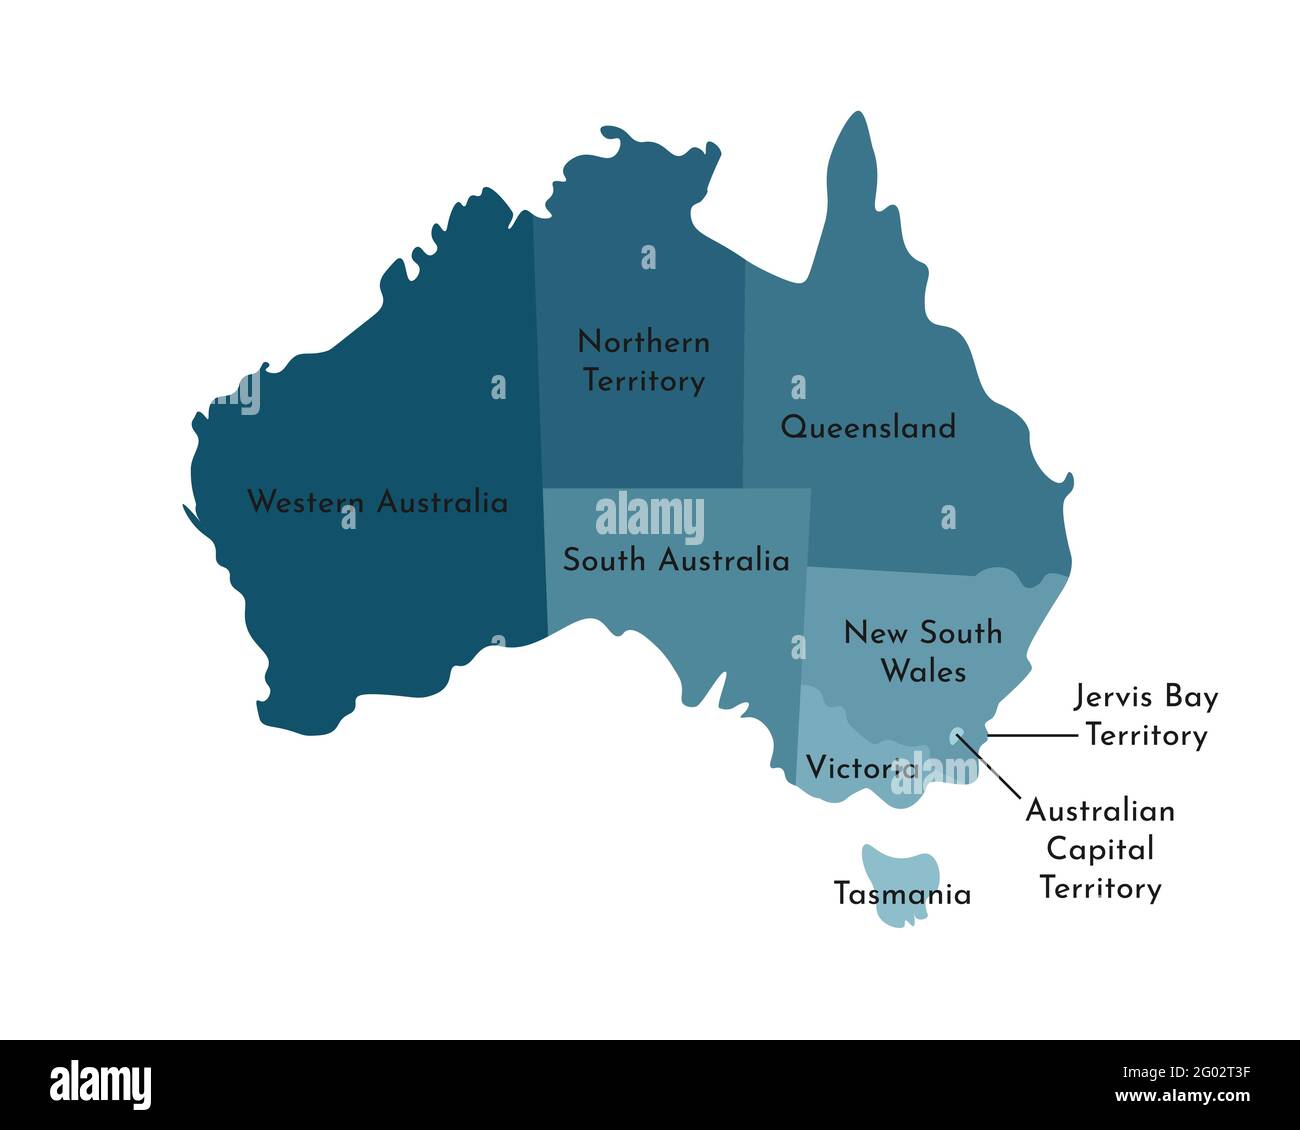 Vettore isolato illustrazione della mappa amministrativa semplificata dell'Australia. Frontiere e nomi delle regioni, compresi solo i territori più vicini. Colore Illustrazione Vettoriale